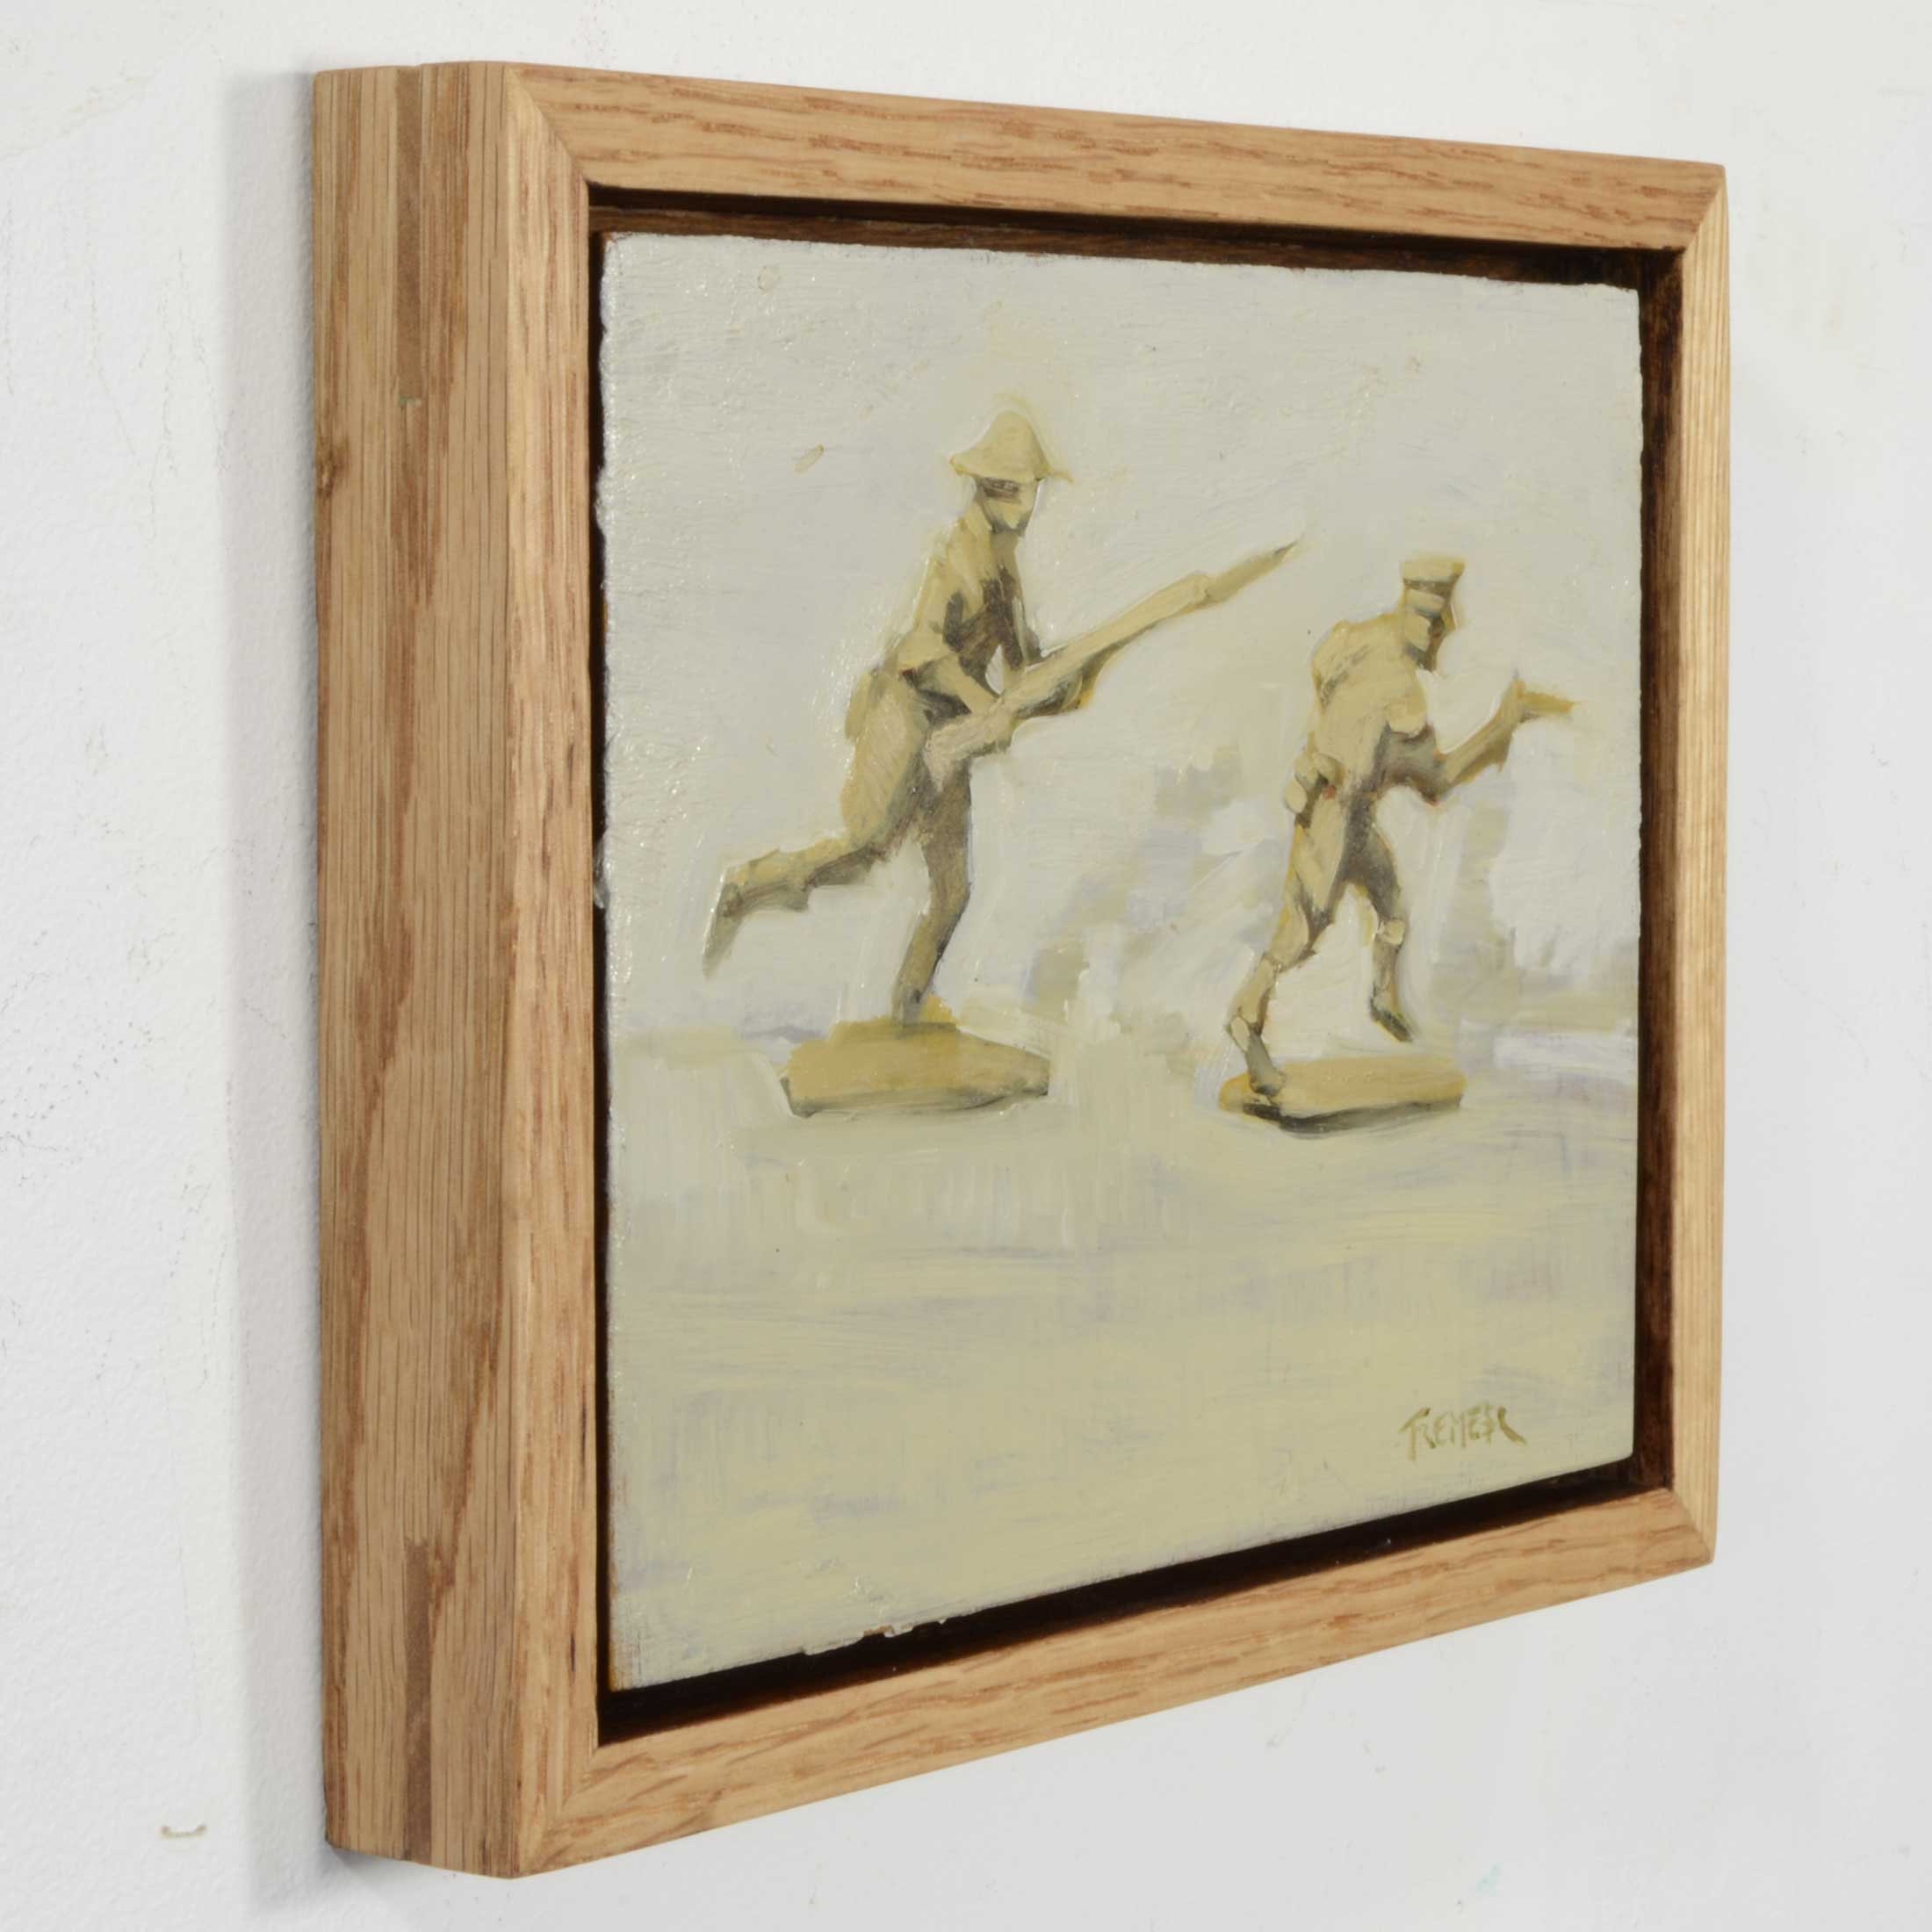 Marco de madera Fiorito 30x45 cm roble claro